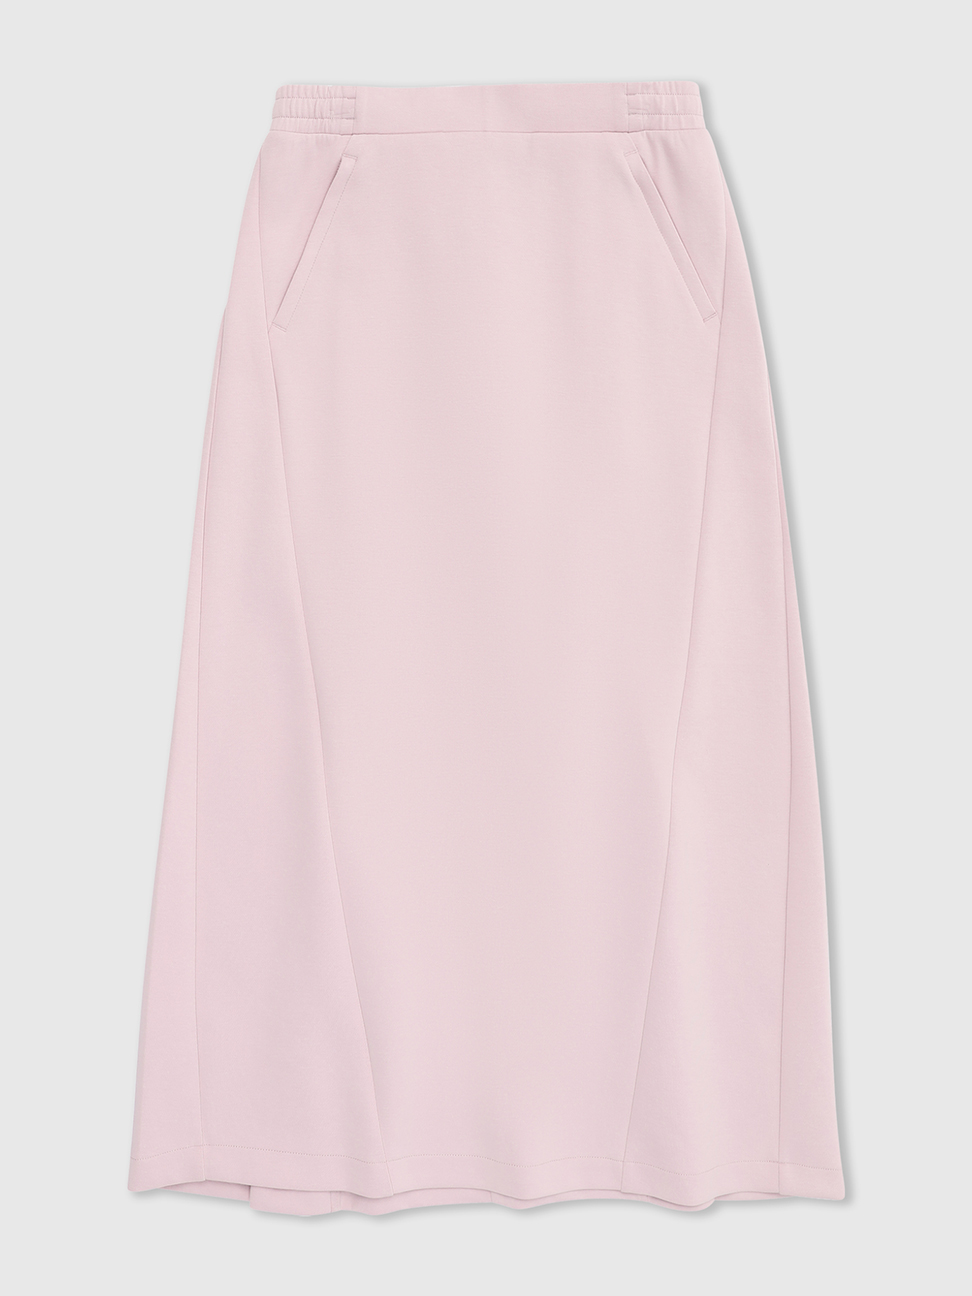 女裝|A字鬆緊長裙 空氣三明治系列-淺粉色